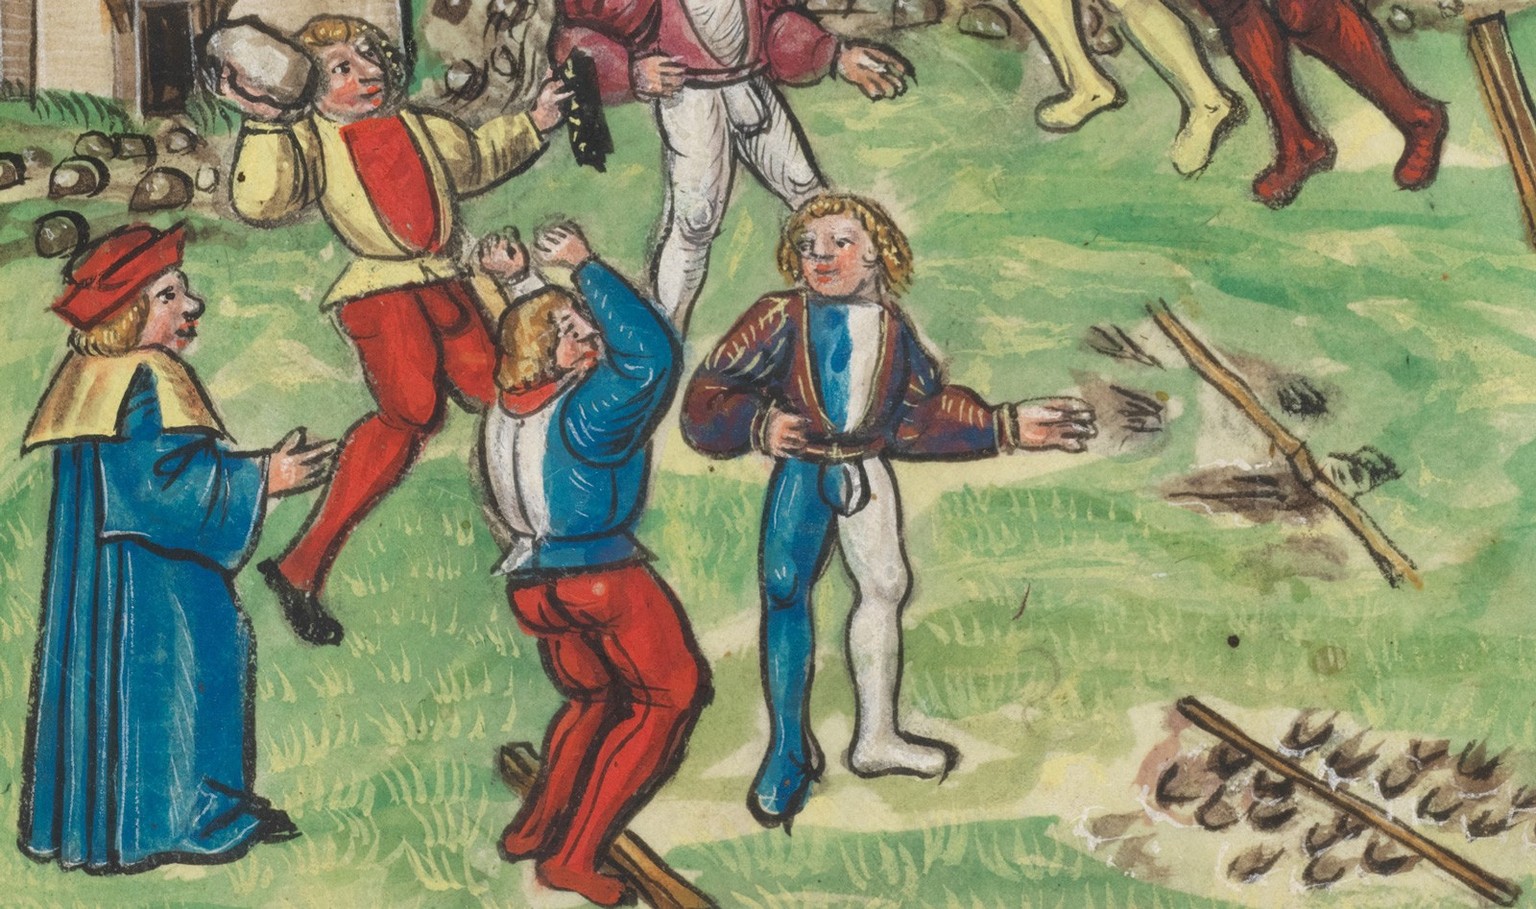 Detail aus der Abbildung aus der Eidgenössischen Chronik des Luzerners Diebold Schilling, um 1513.
https://www.e-codices.unifr.ch/de/kol/S0023-2/557